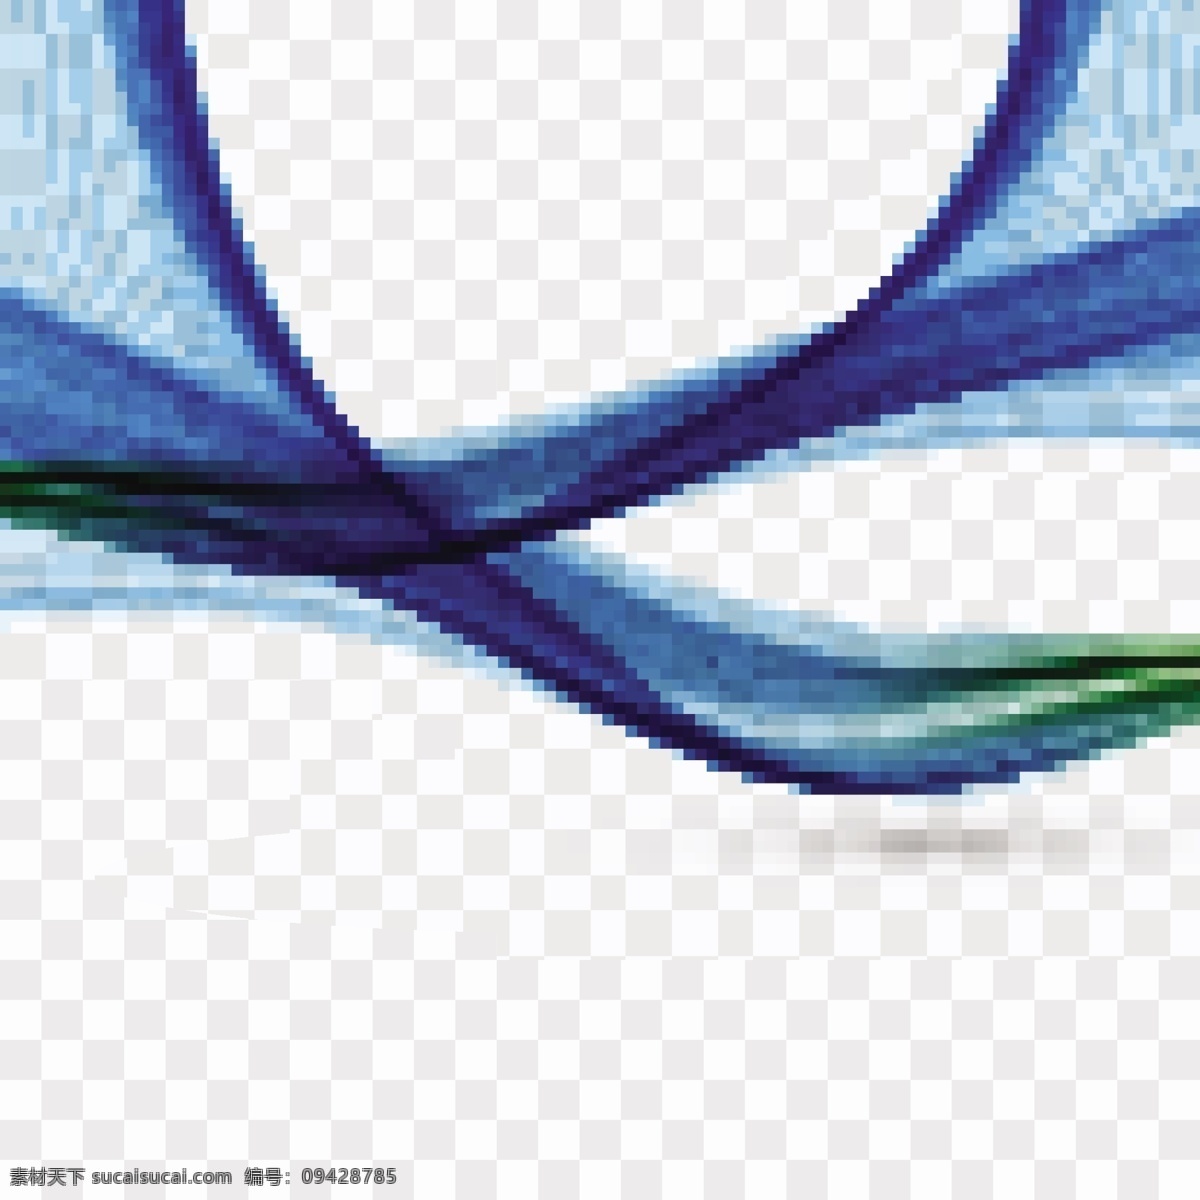 波浪 浮动 形状 背景 抽象 模板 线条 蓝色 烟雾 现代 抽象的形状 运动 柔软 闪亮 漂浮 平滑 混合 波浪背景 流动